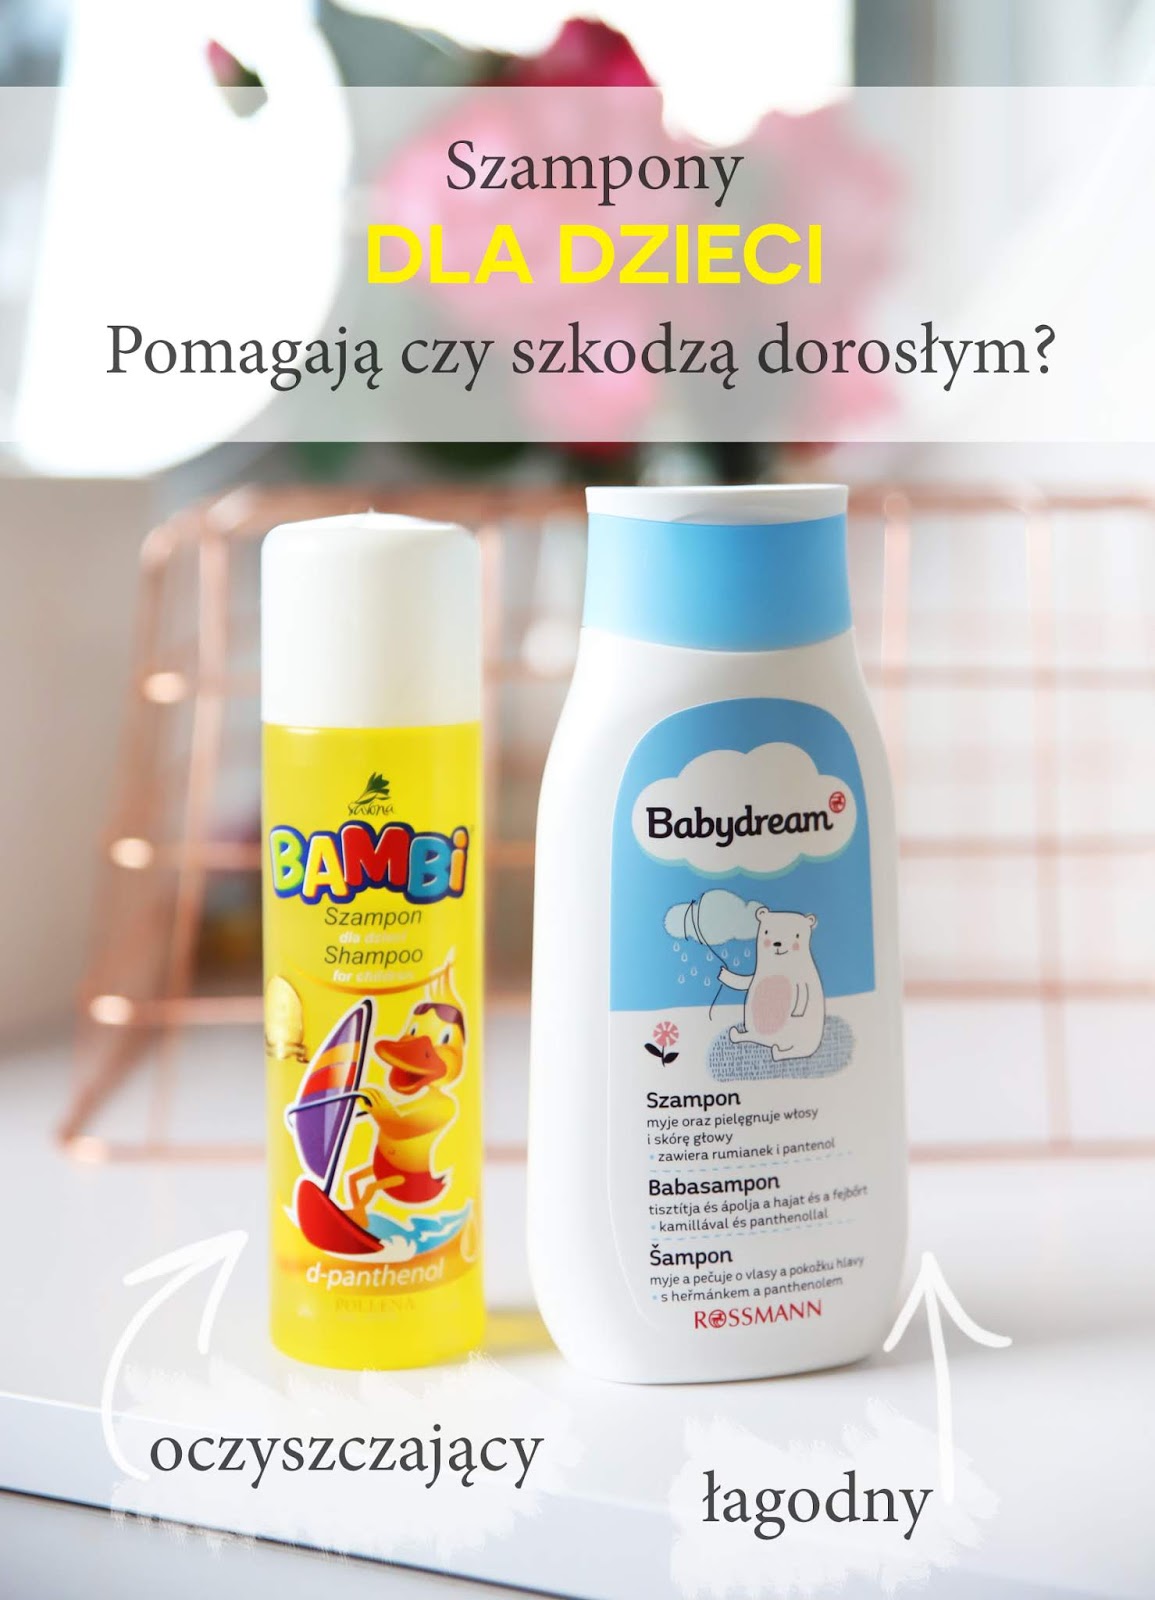 szampon dla dzieci z jak najmniejsza iloscia skladnikow